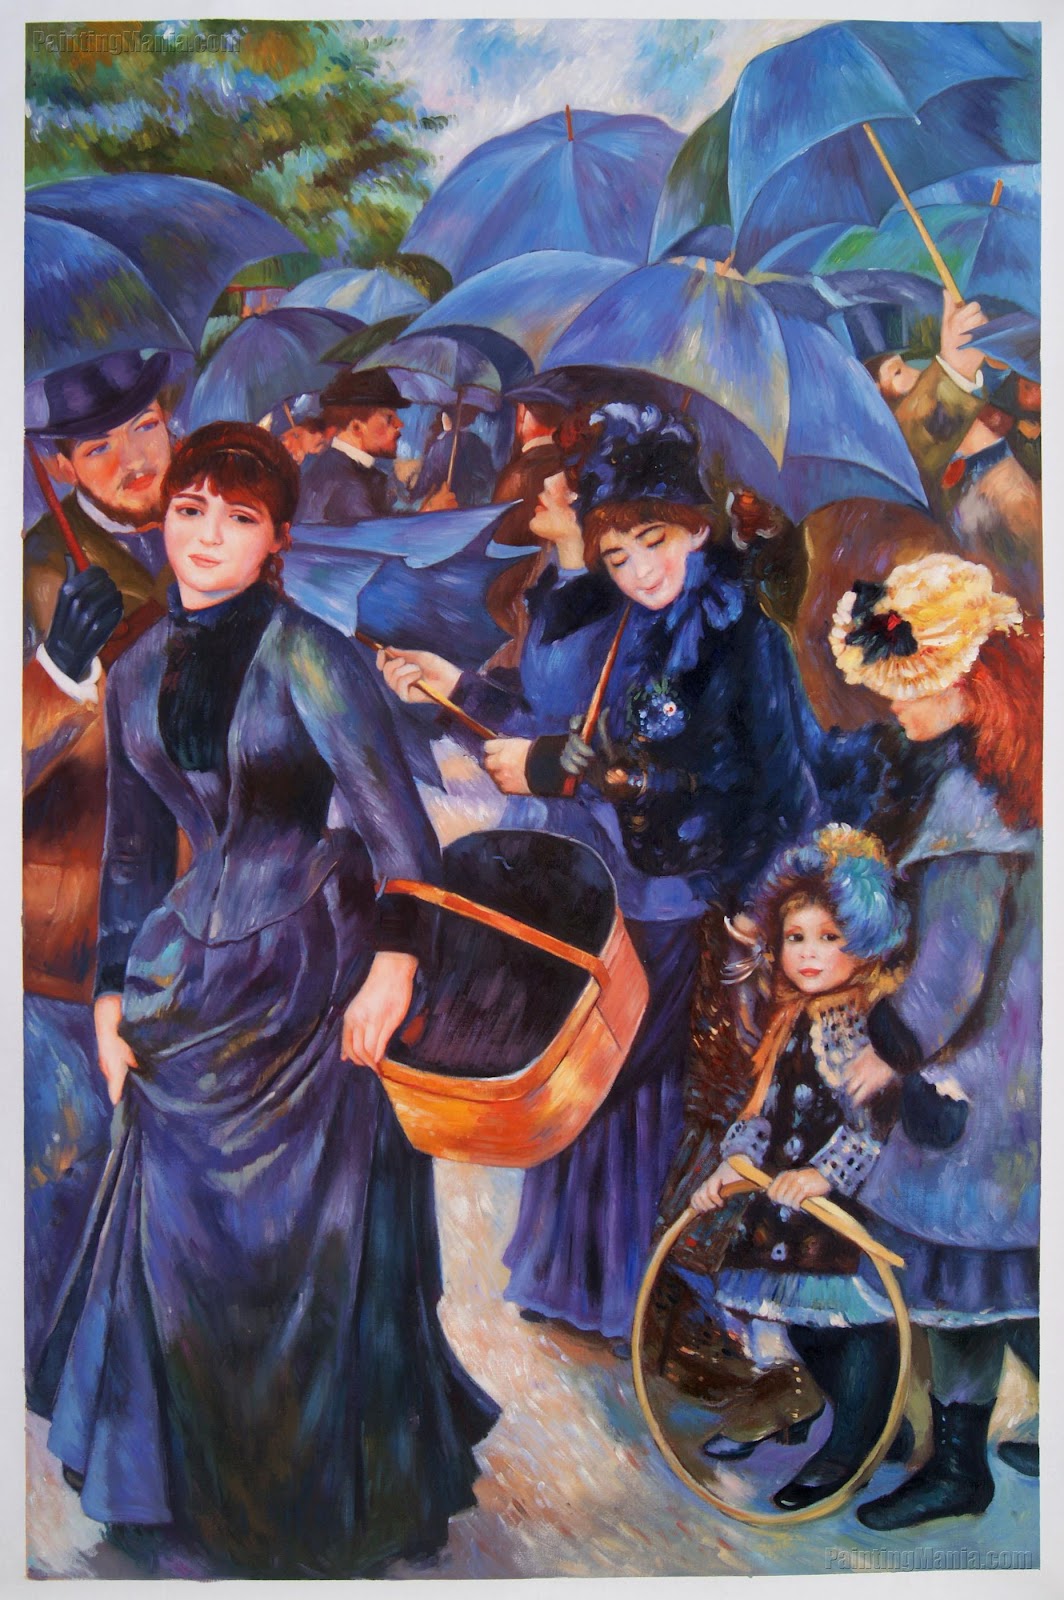 Umbrellas - Pierre-Auguste Renoir Paintings